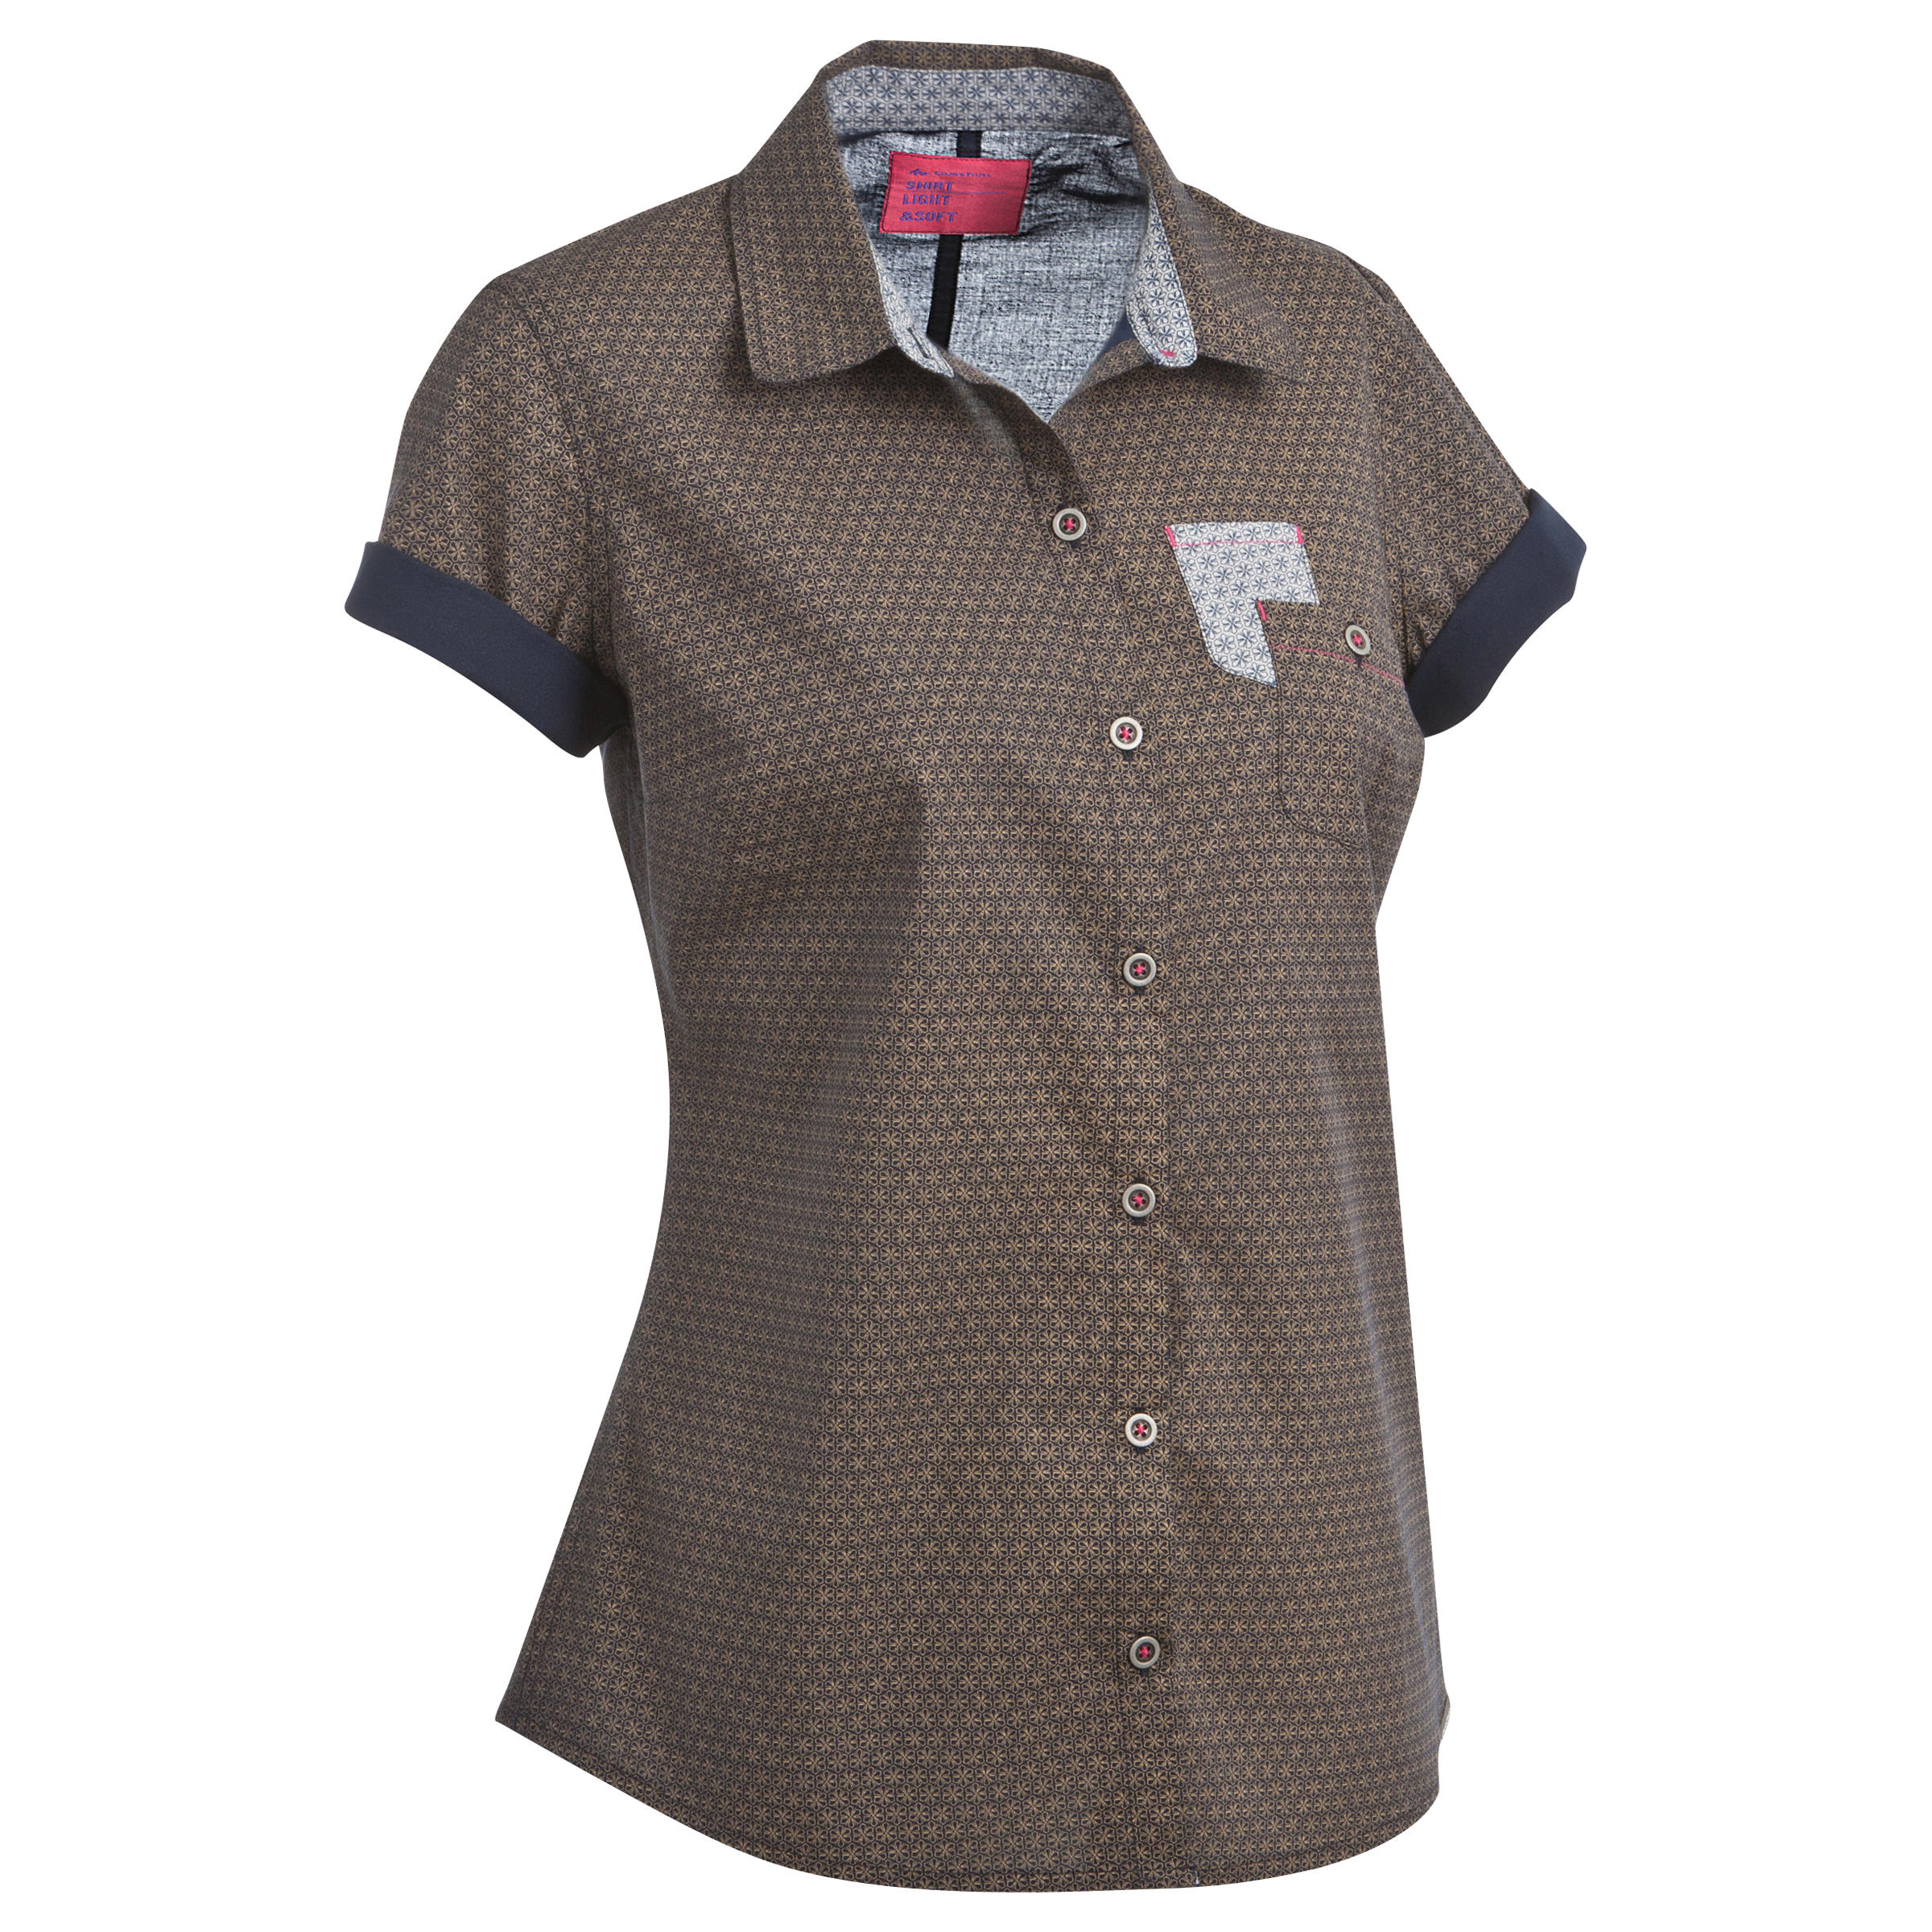 QUECHUA Arpenaz 100 women's short-sleeved hiking shirt - Brown